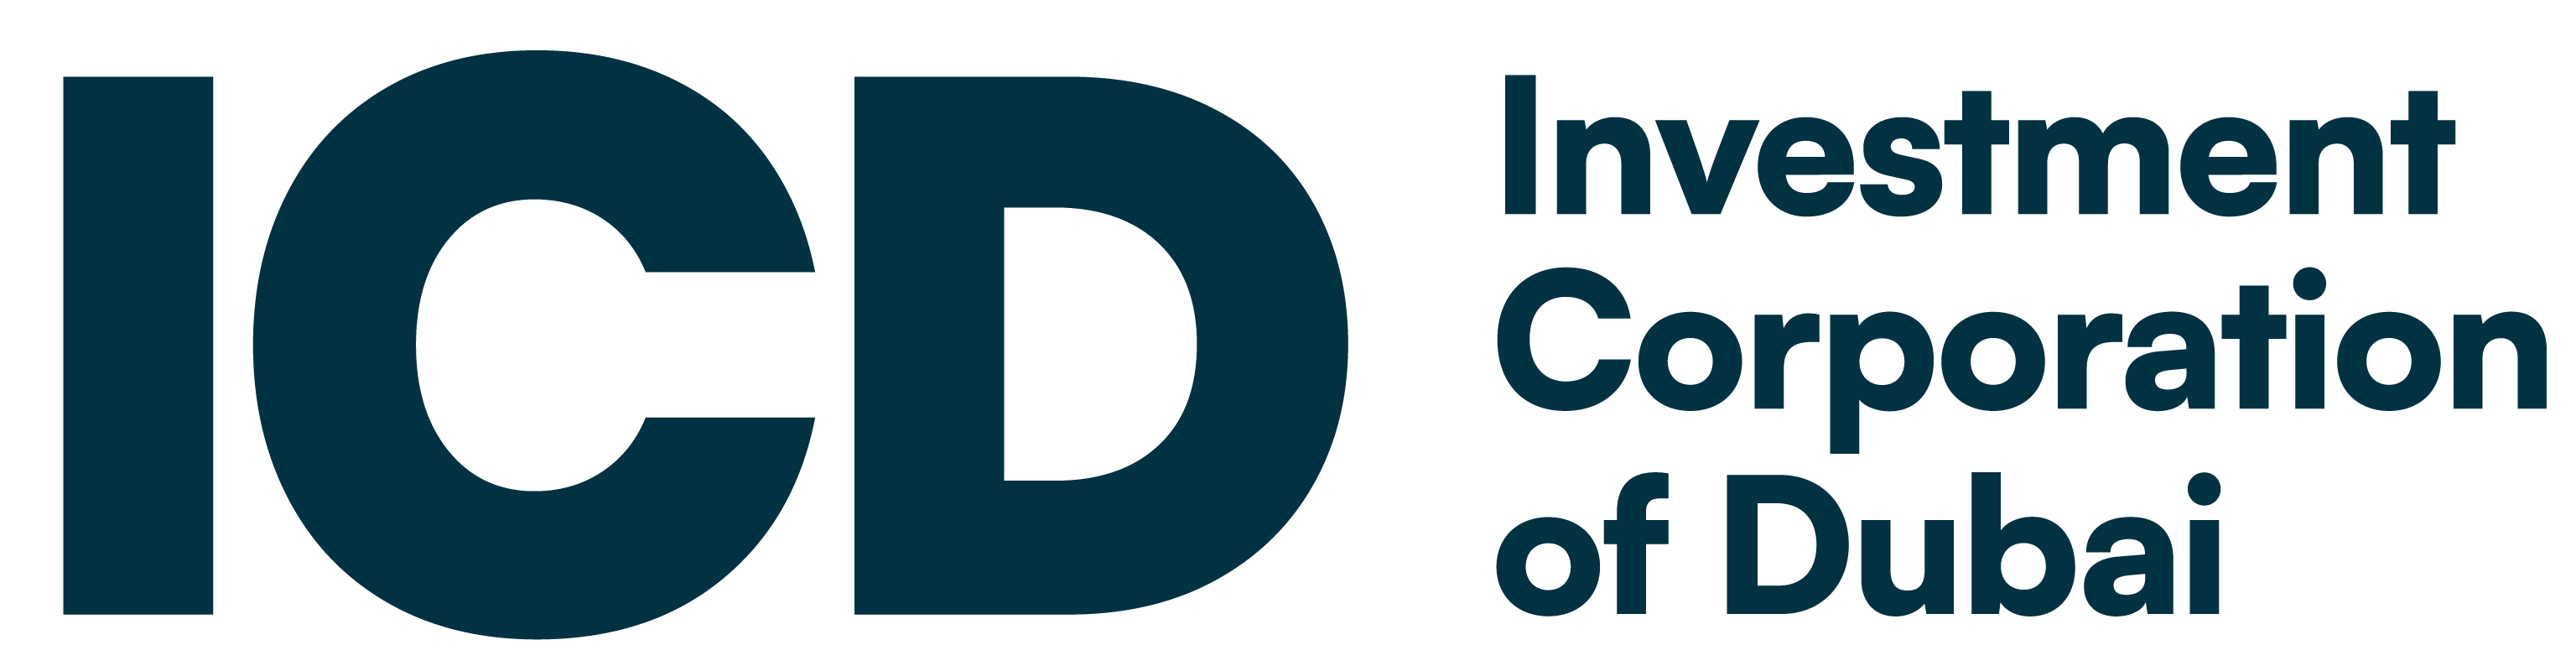 icd-logo-website-6-inner